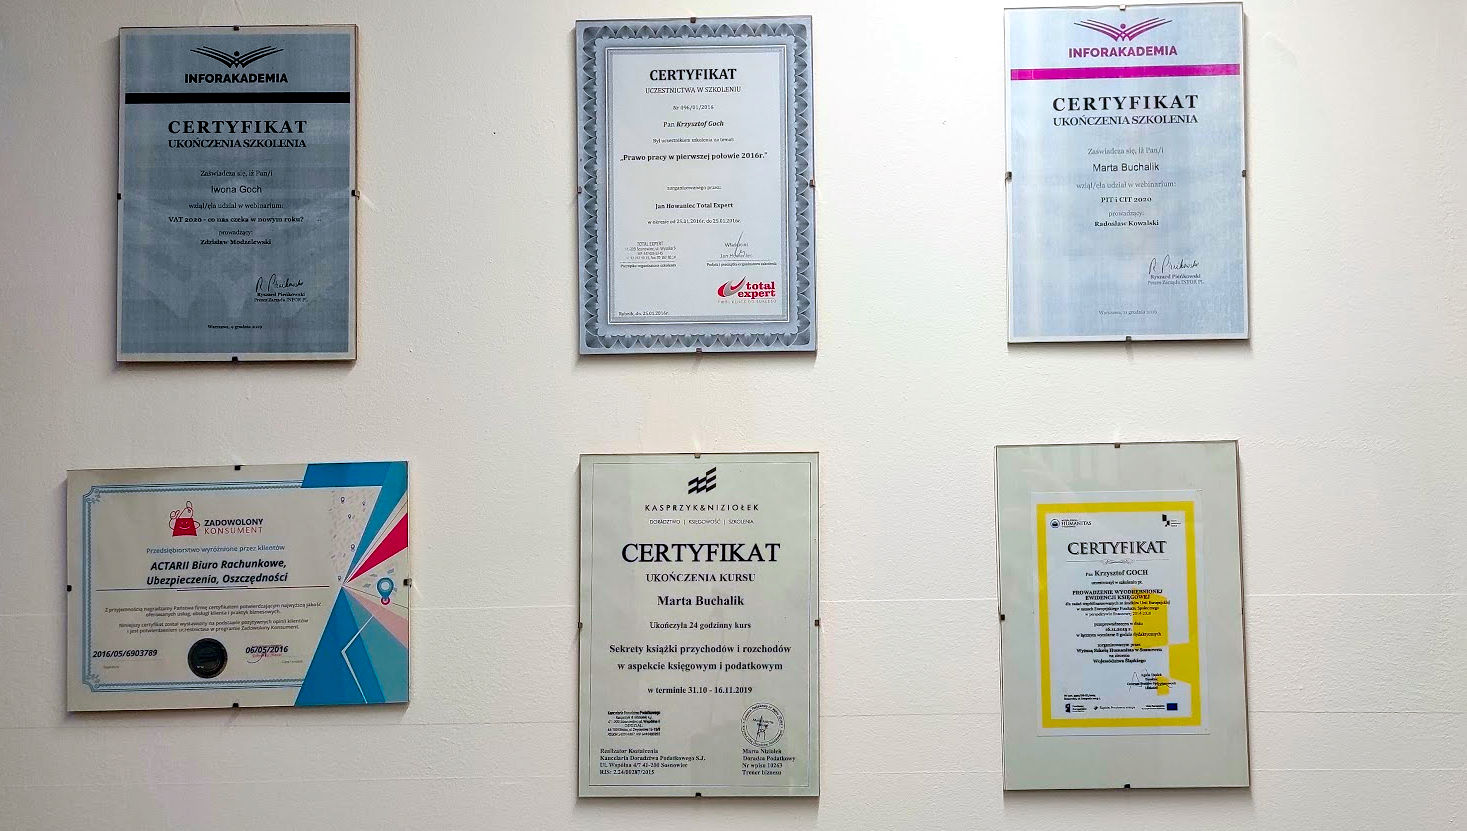 Biuro Rachunkowe Actarii w Rybniku certyfikaty na stron.jpg